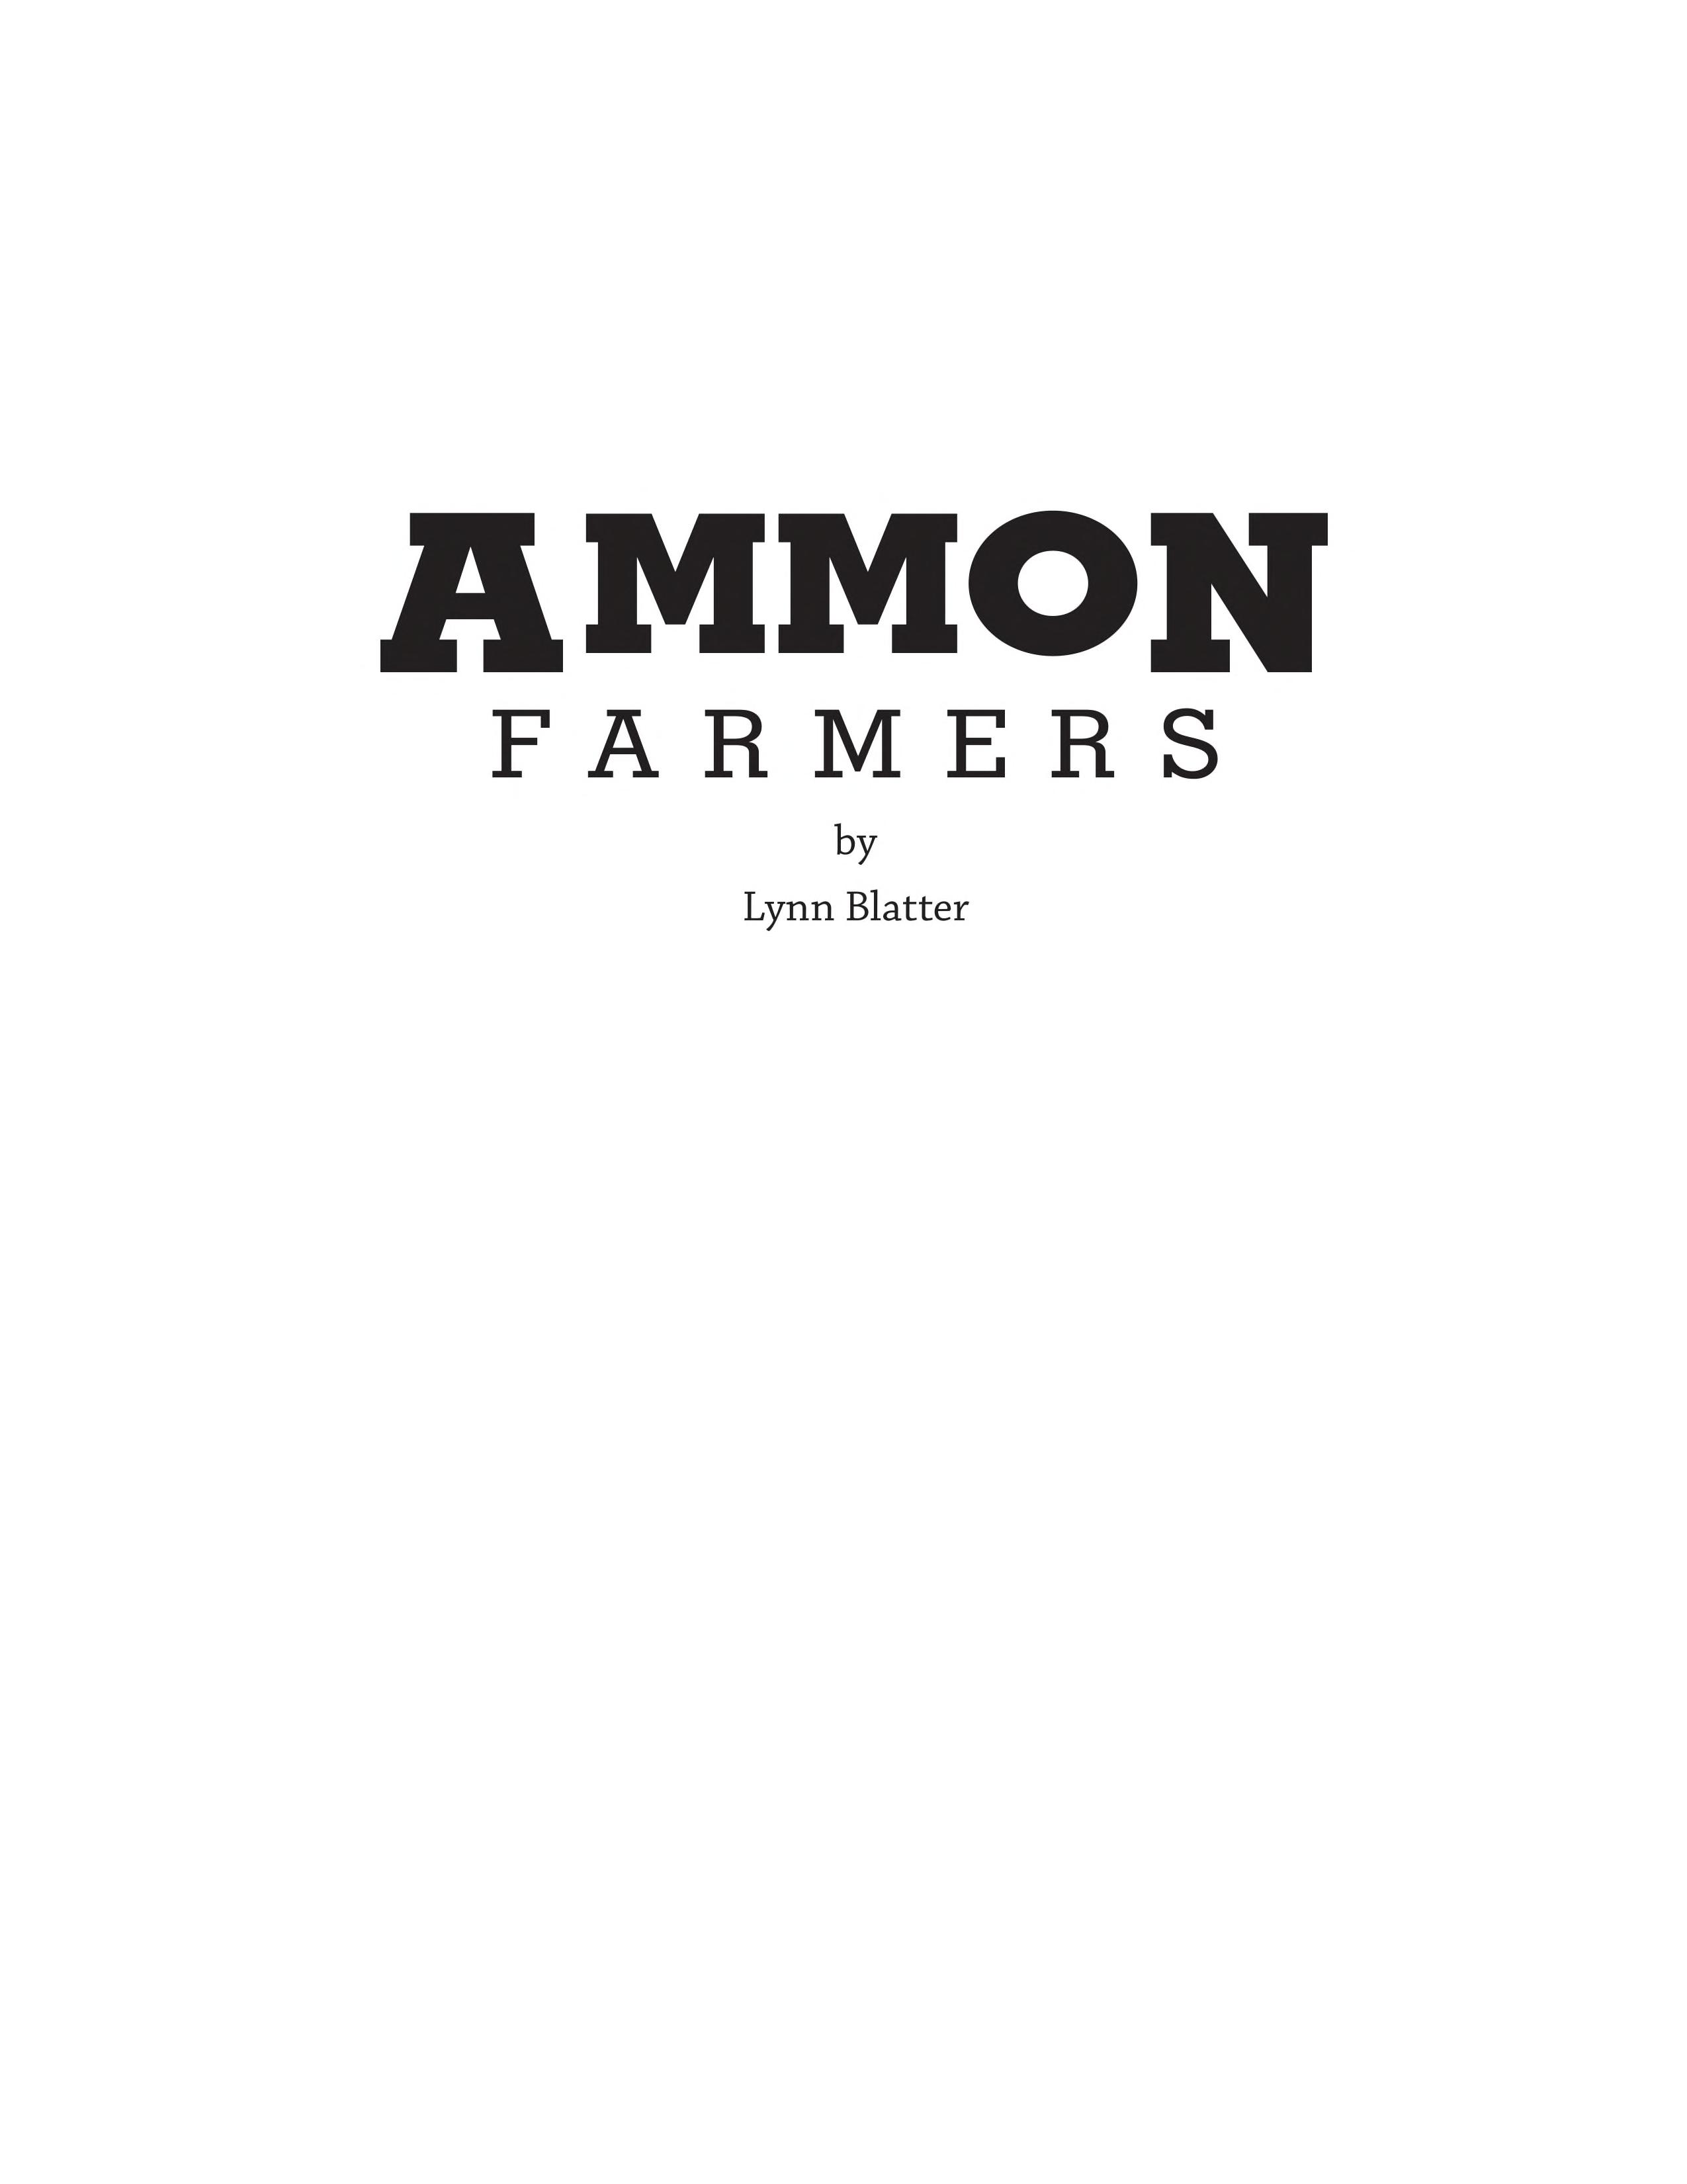 Ammon farmers (book cover)